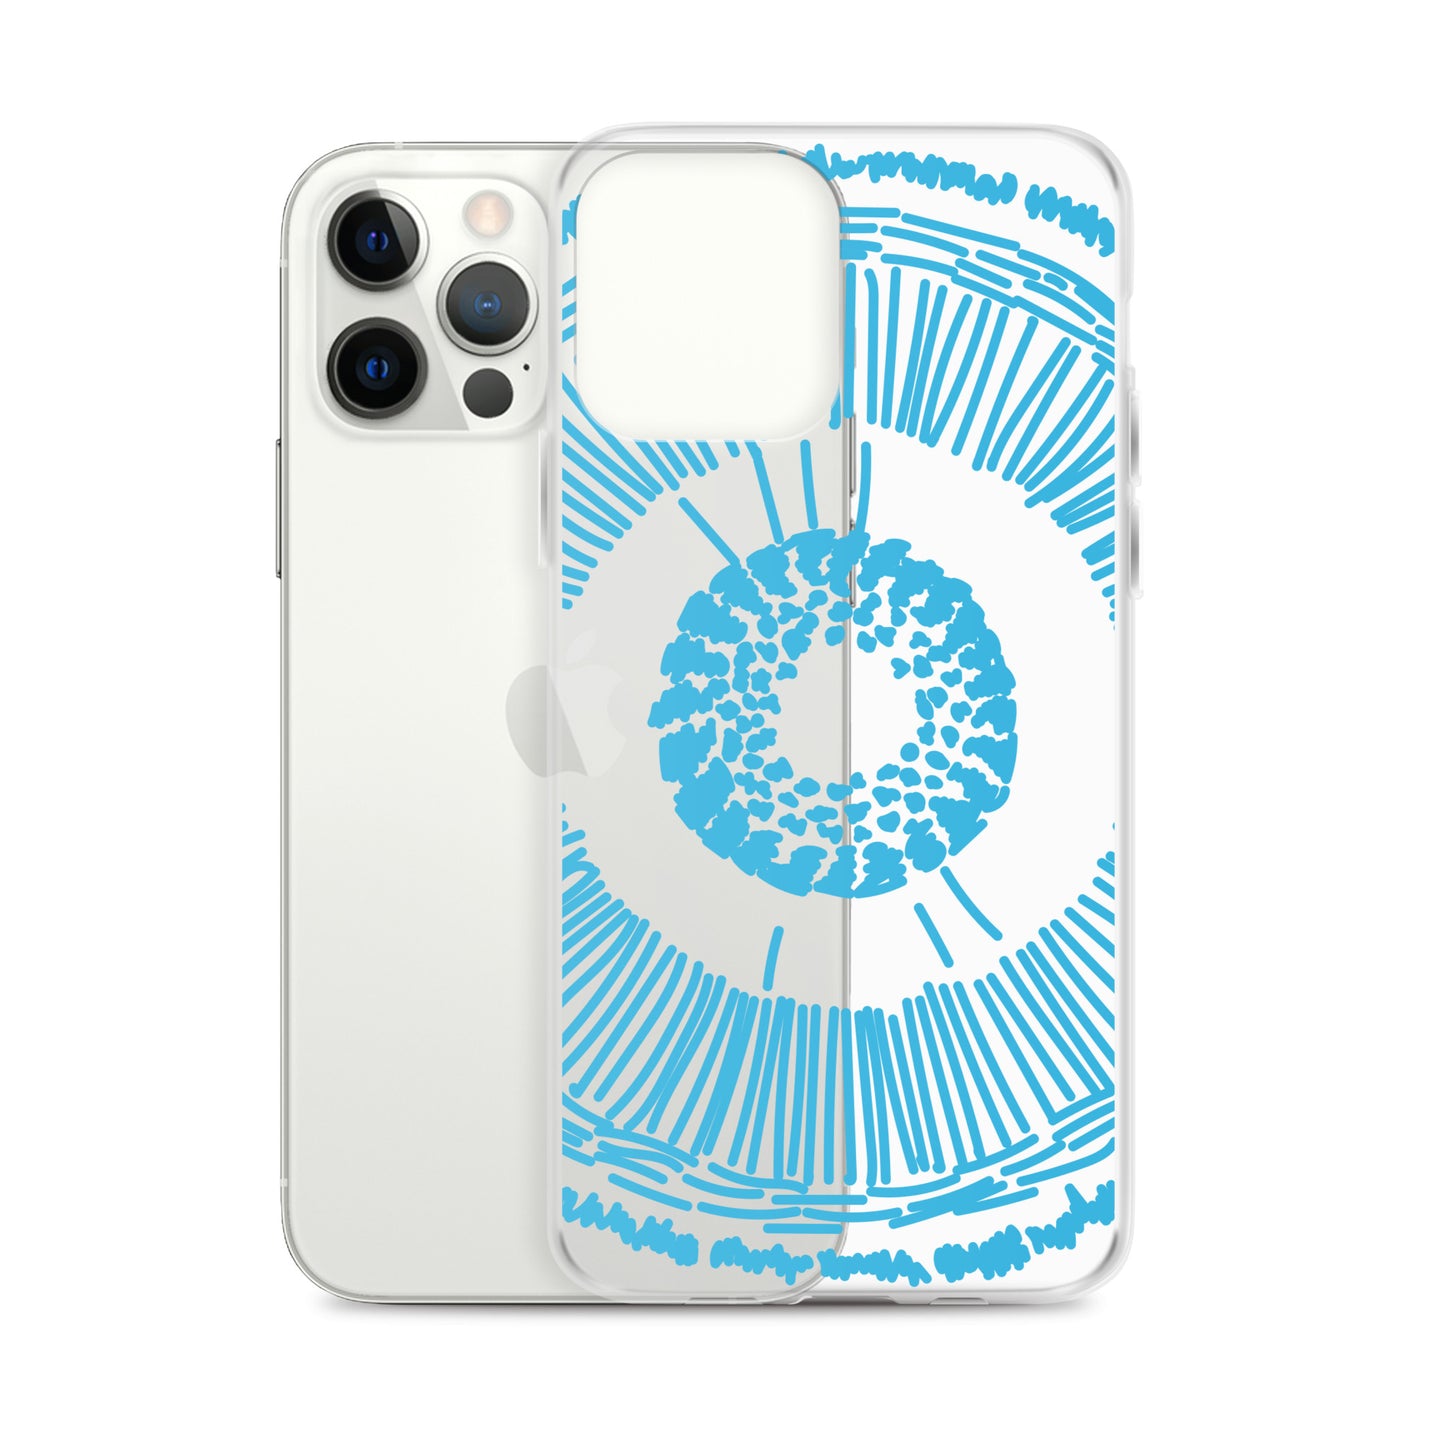 70s Psychodelic Eye Hippie Blue iPhone Case